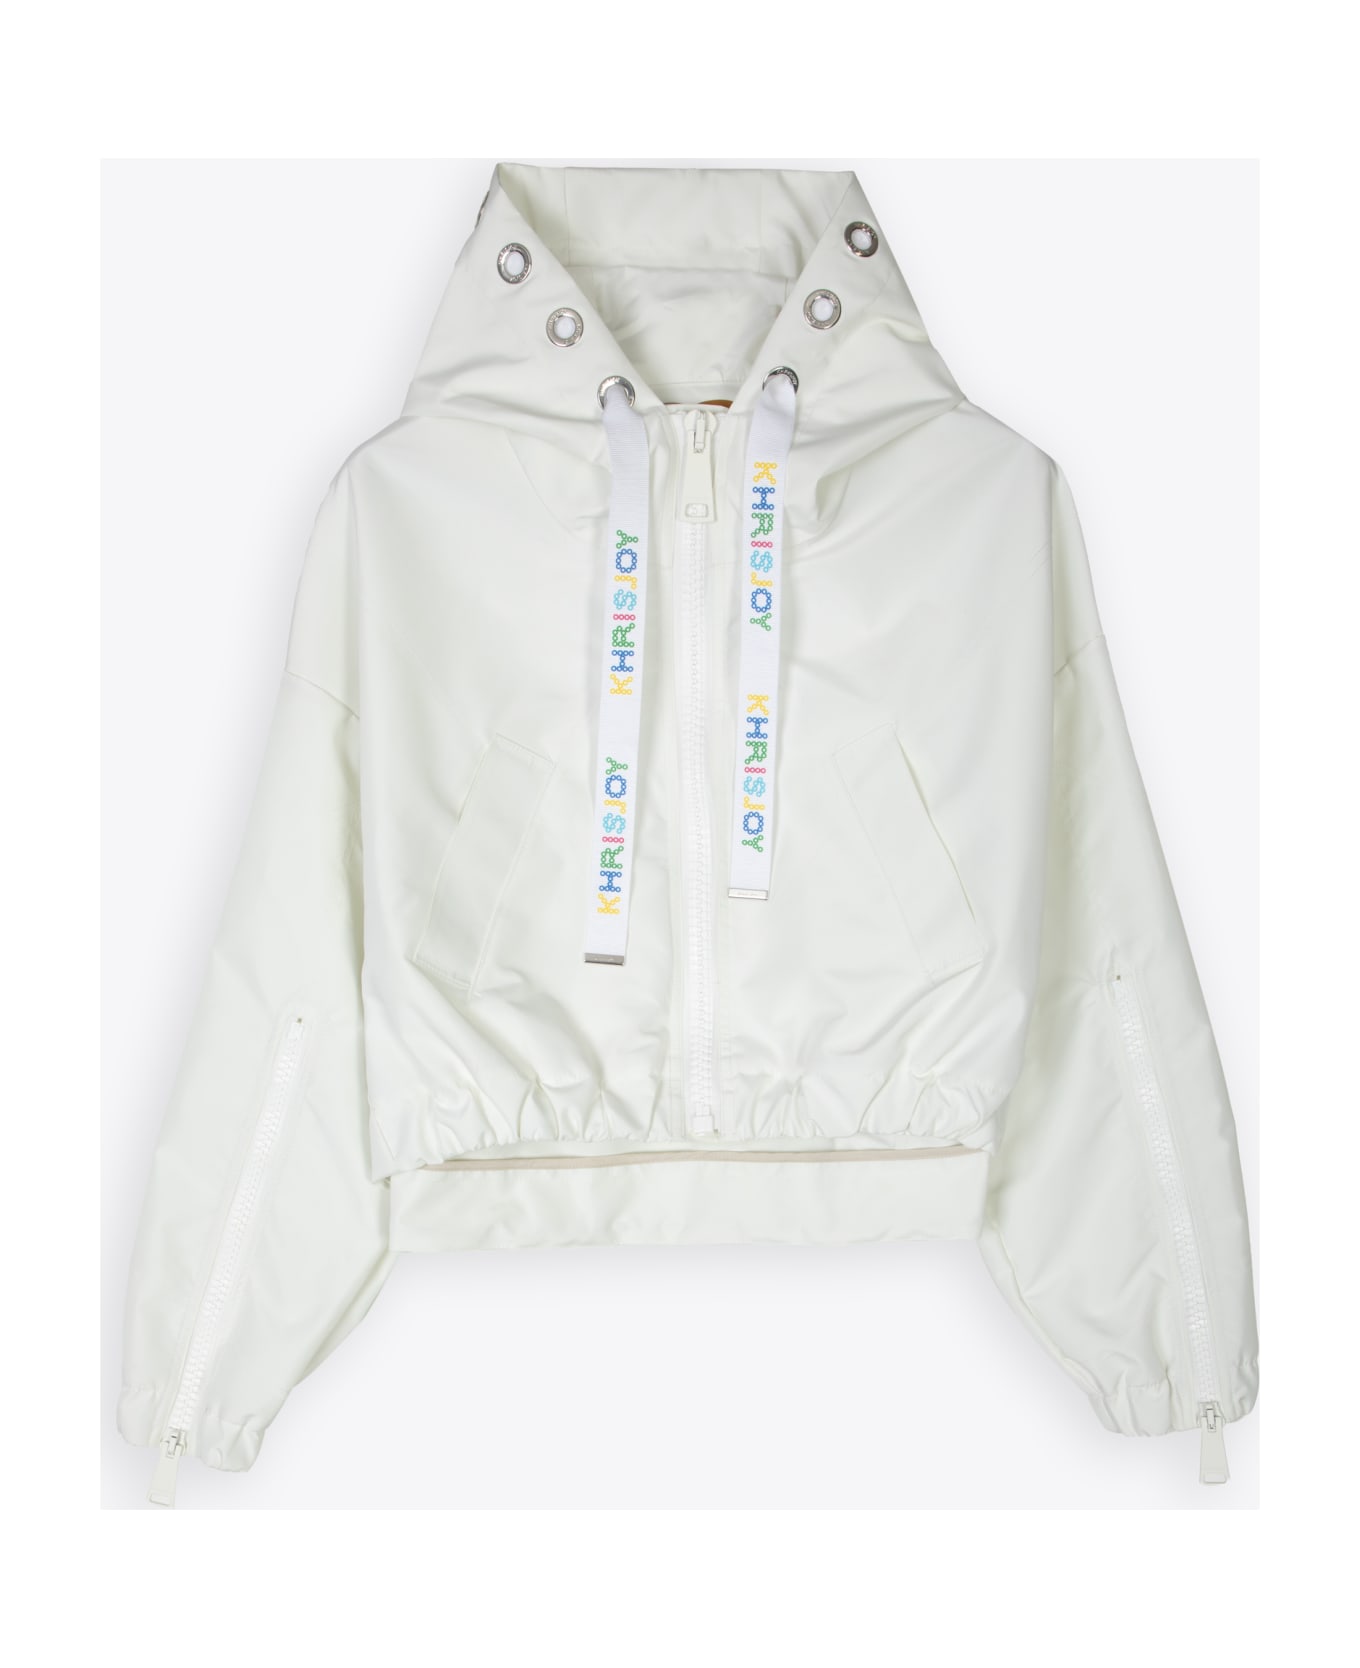 Khrisjoy New Khris Crop Windbreaker Off white nylon hooded windproof jacket - New Khris Crop Windbreaker - Bianco フリース